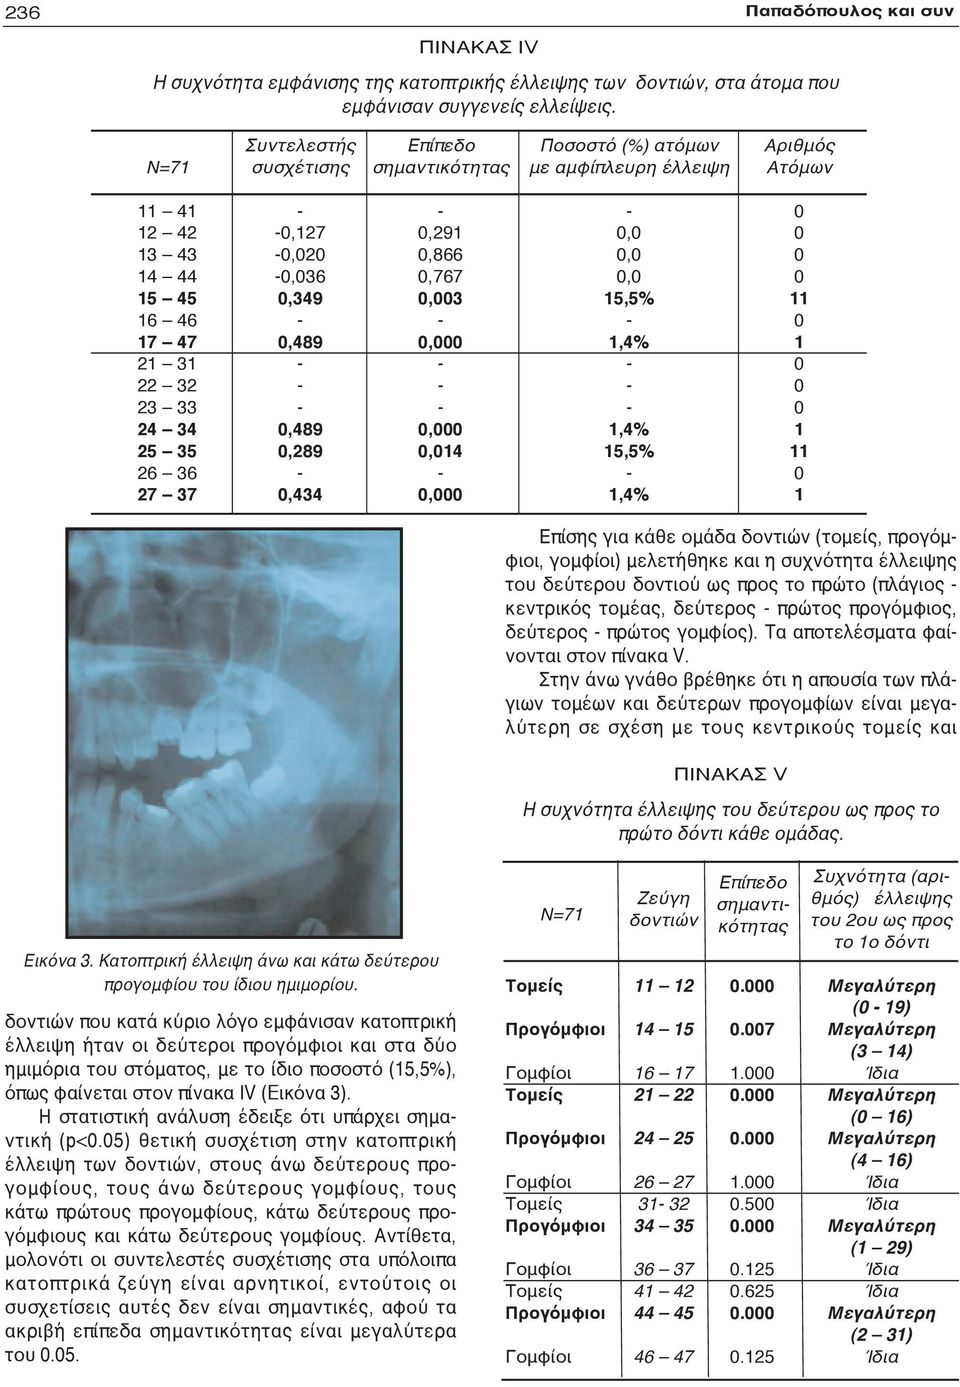 5,5%,4%,4% 5,5%,4% Επίσης για κάθε ομάδα δοντιών (τομείς, προγόμφιοι, γομφίοι) μελετήθηκε και η συχνότητα έλλειψης του δεύτερου δοντιού ως προς το πρώτο (πλάγιος κεντρικός τομέας, δεύτερος πρώτος